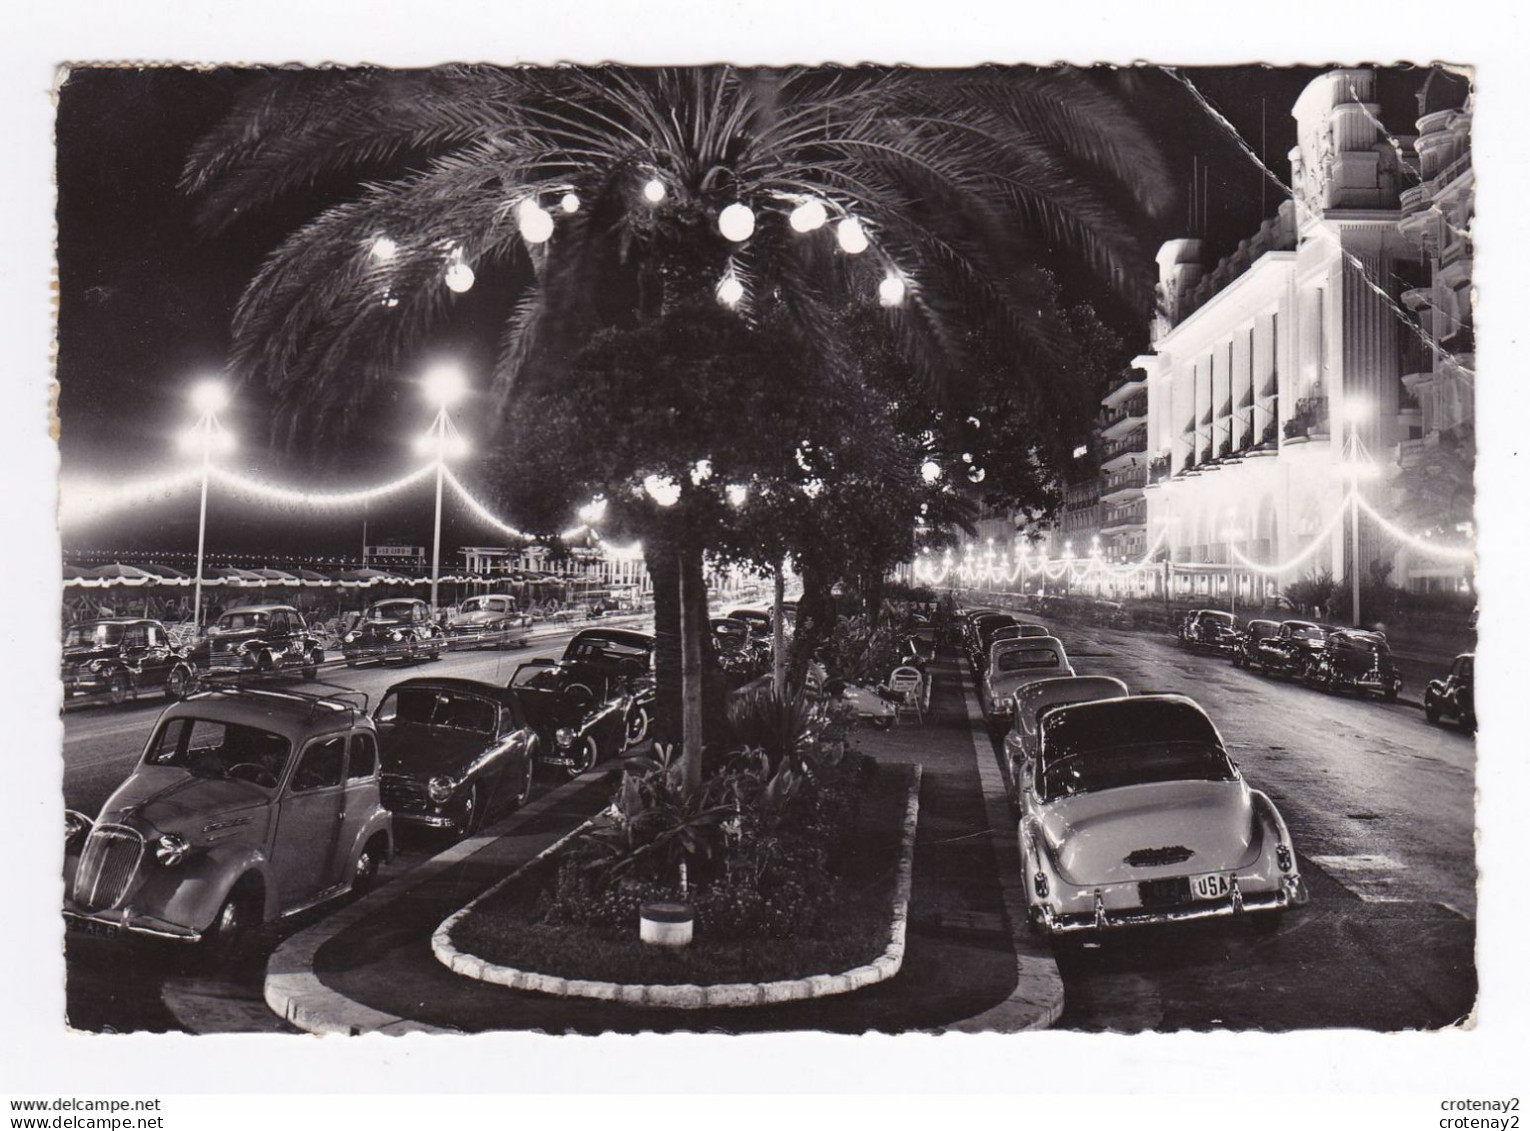 06 NICE N°747 La Promenade Des Anglais La Nuit En 1958 VOIR 2 ZOOMS Cabriolet Simca 8 Sport Auto Américaine VESPA - Nice La Nuit